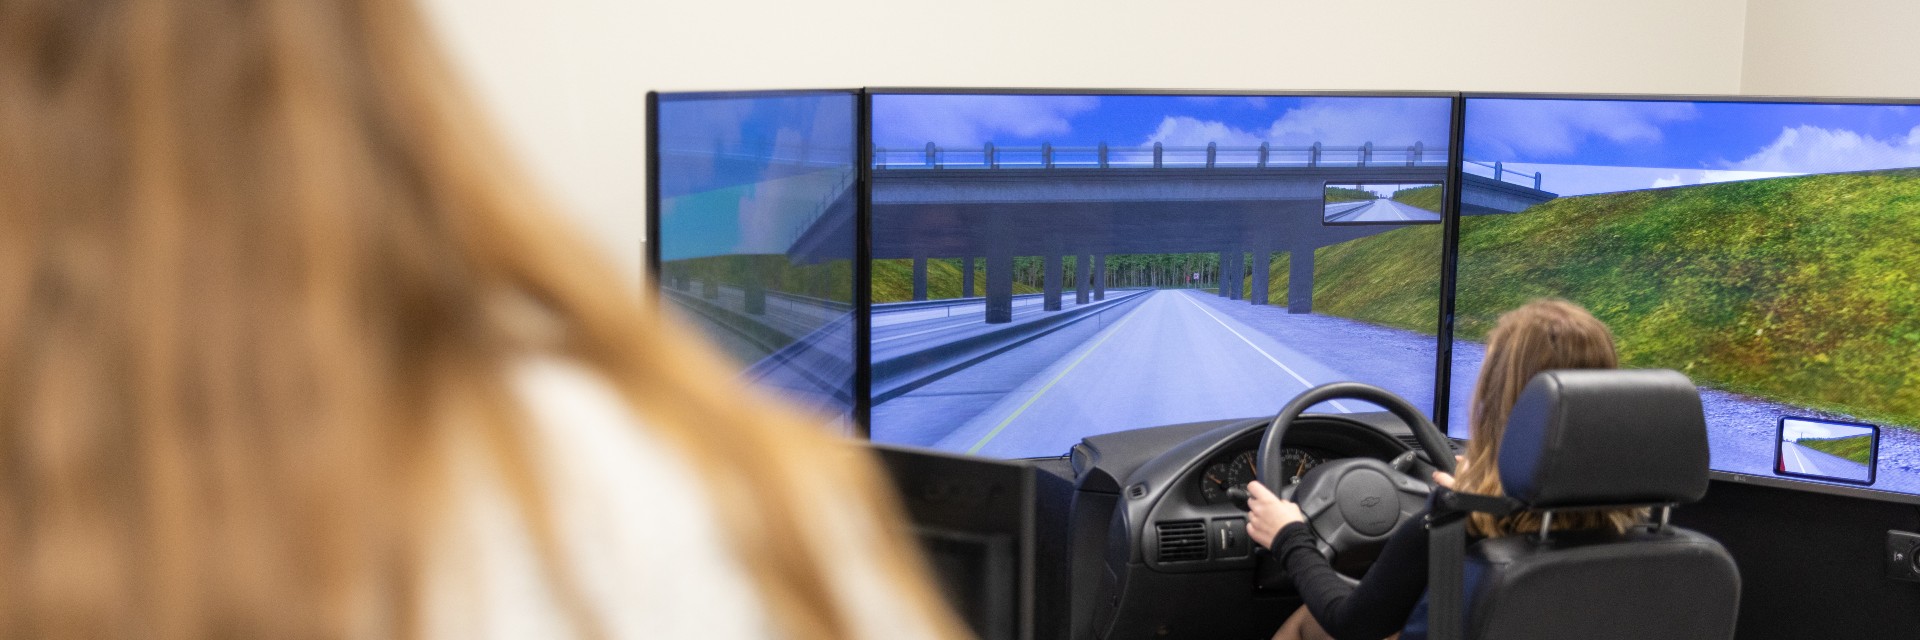 driving-simulator.jpg